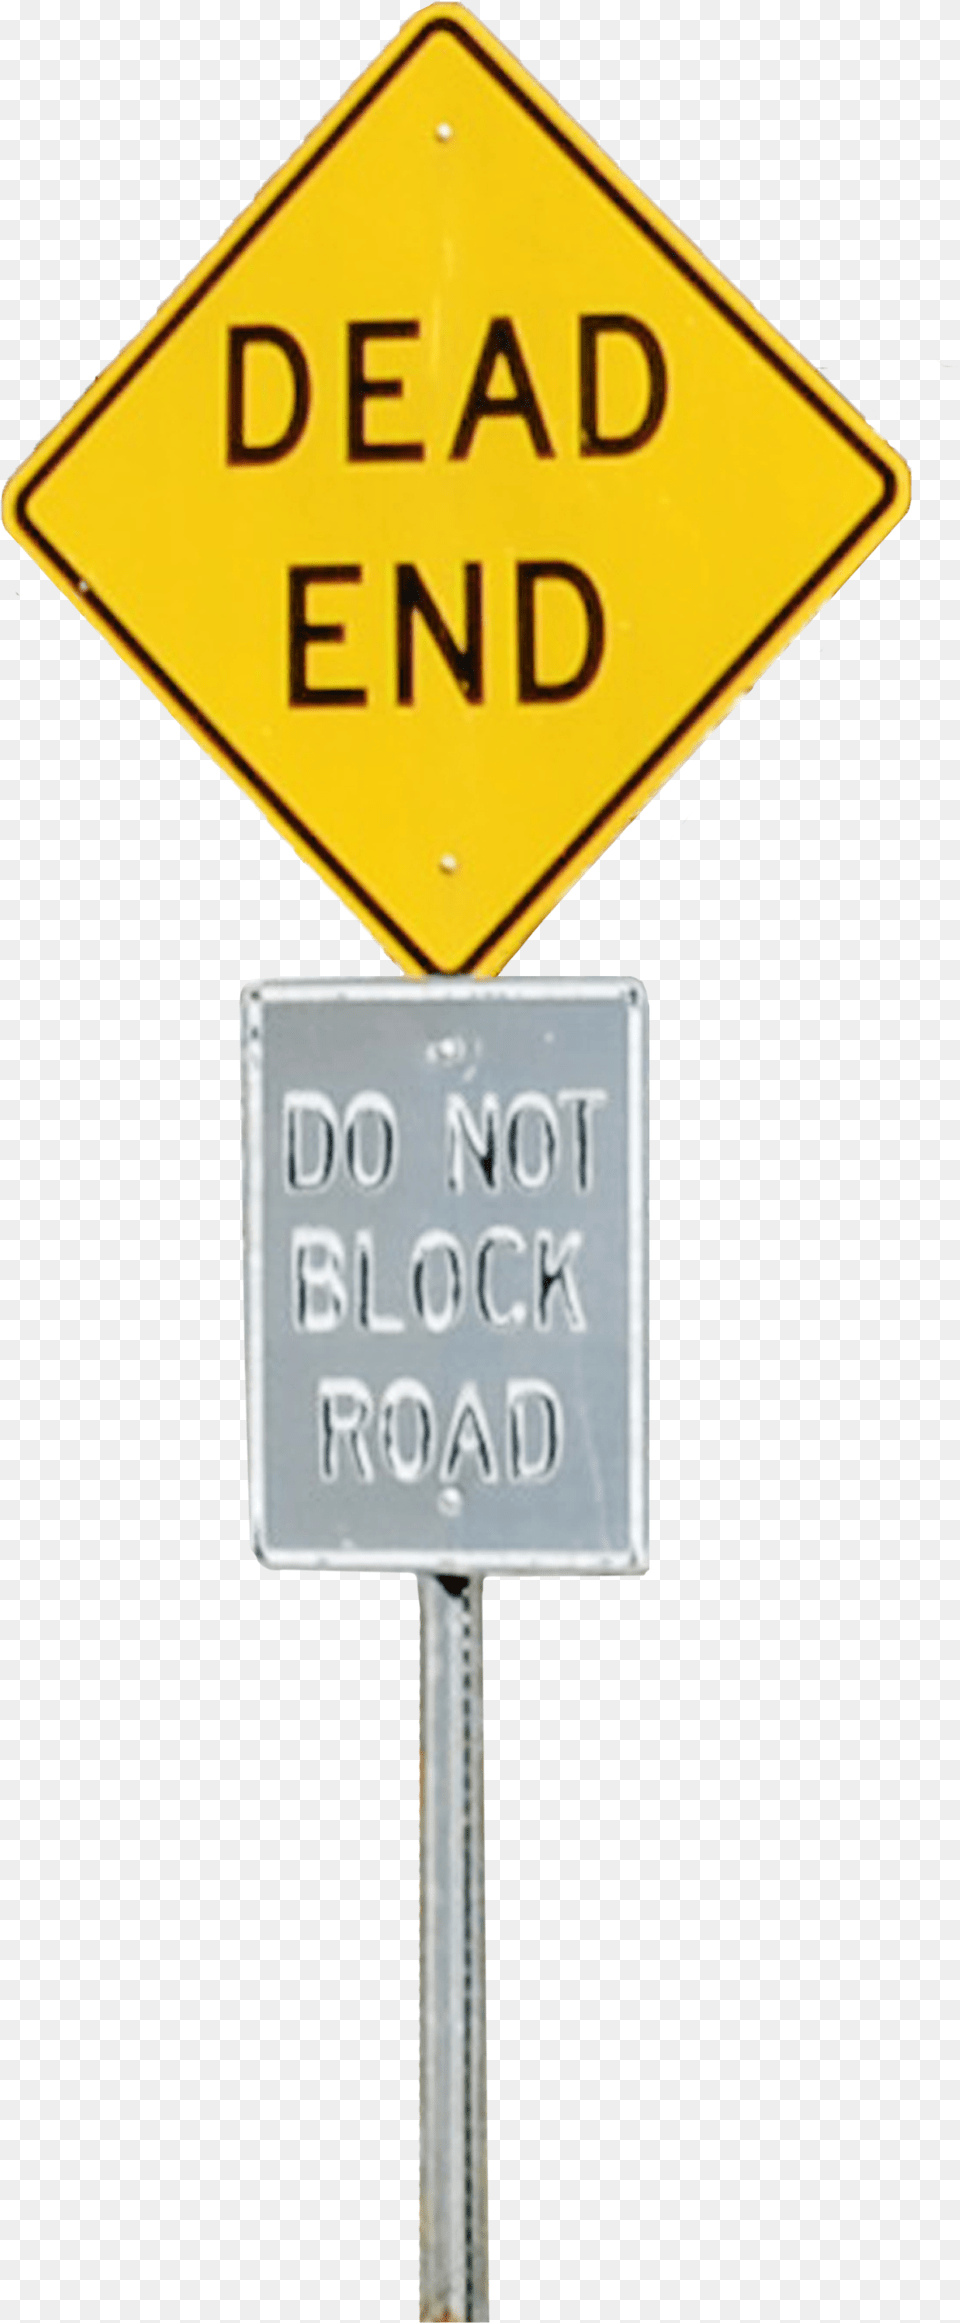 Dead End Sign Transparent, Road Sign, Symbol Free Png Download